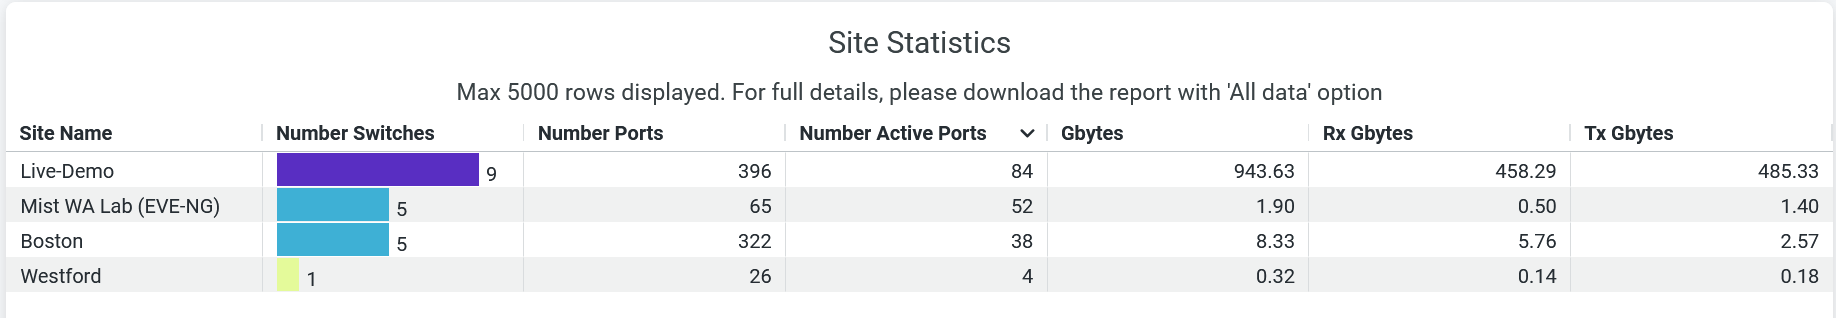 Site Statistics